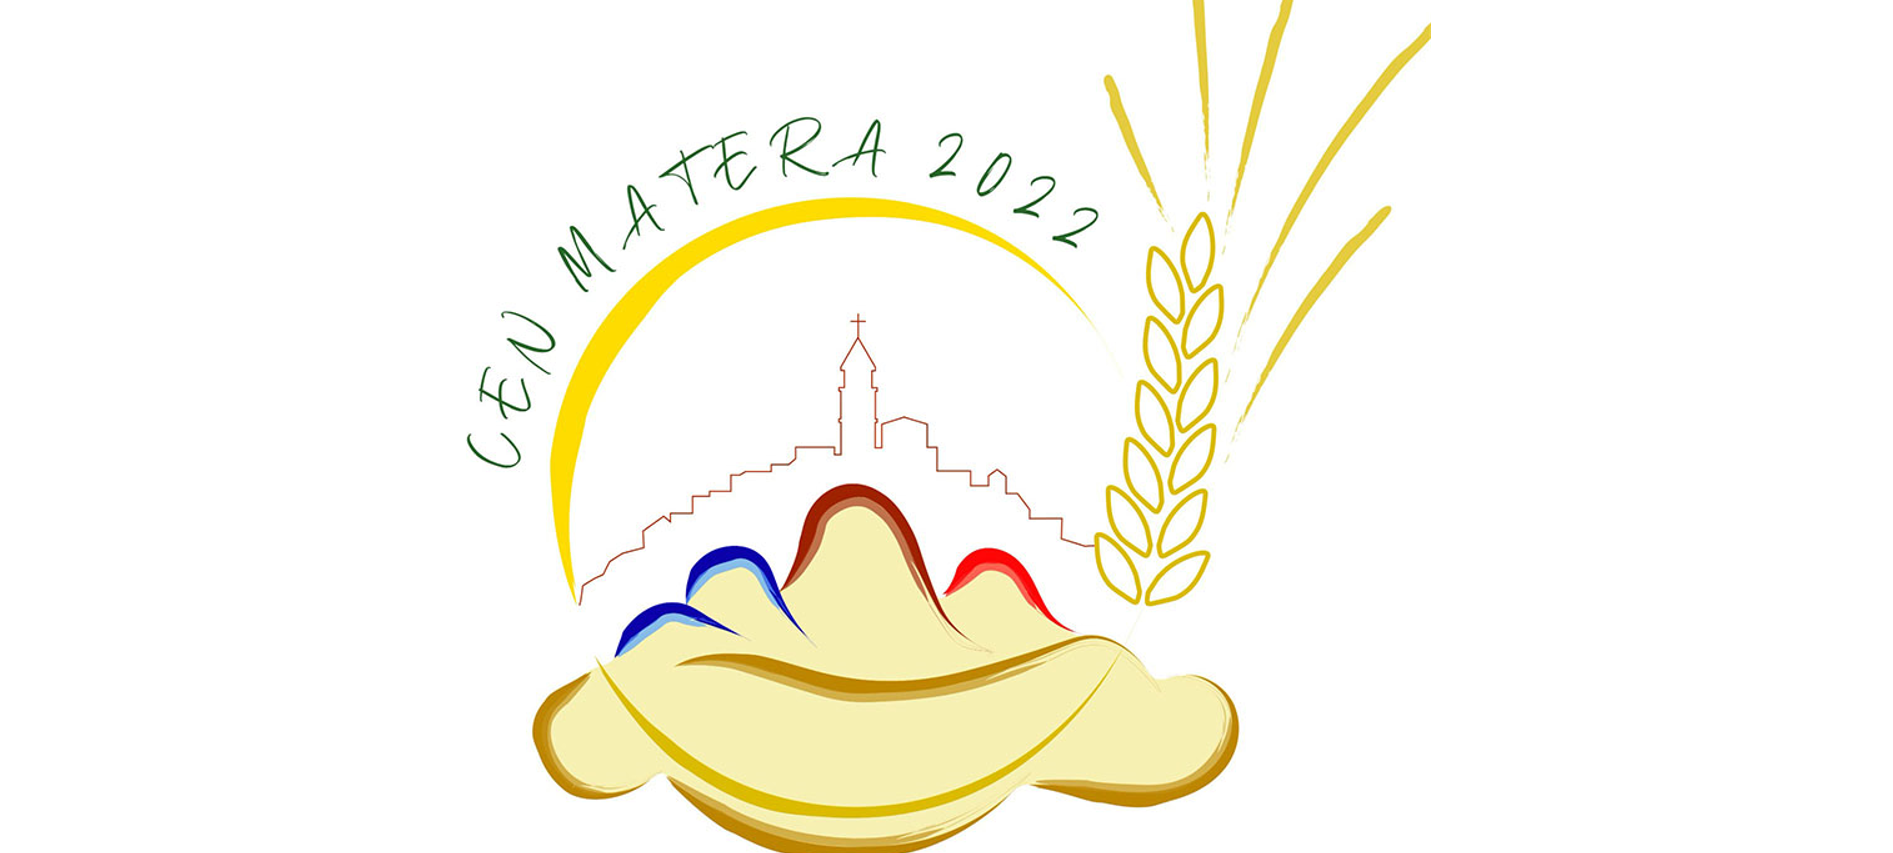 Realizzato da due giovani materani, Eustachio Santochirico e Cristina Acito,   il logo del XXVII Congresso Eucaristico Nazionale che si celebrerà a Matera dal 22 al 25 settembre 2022